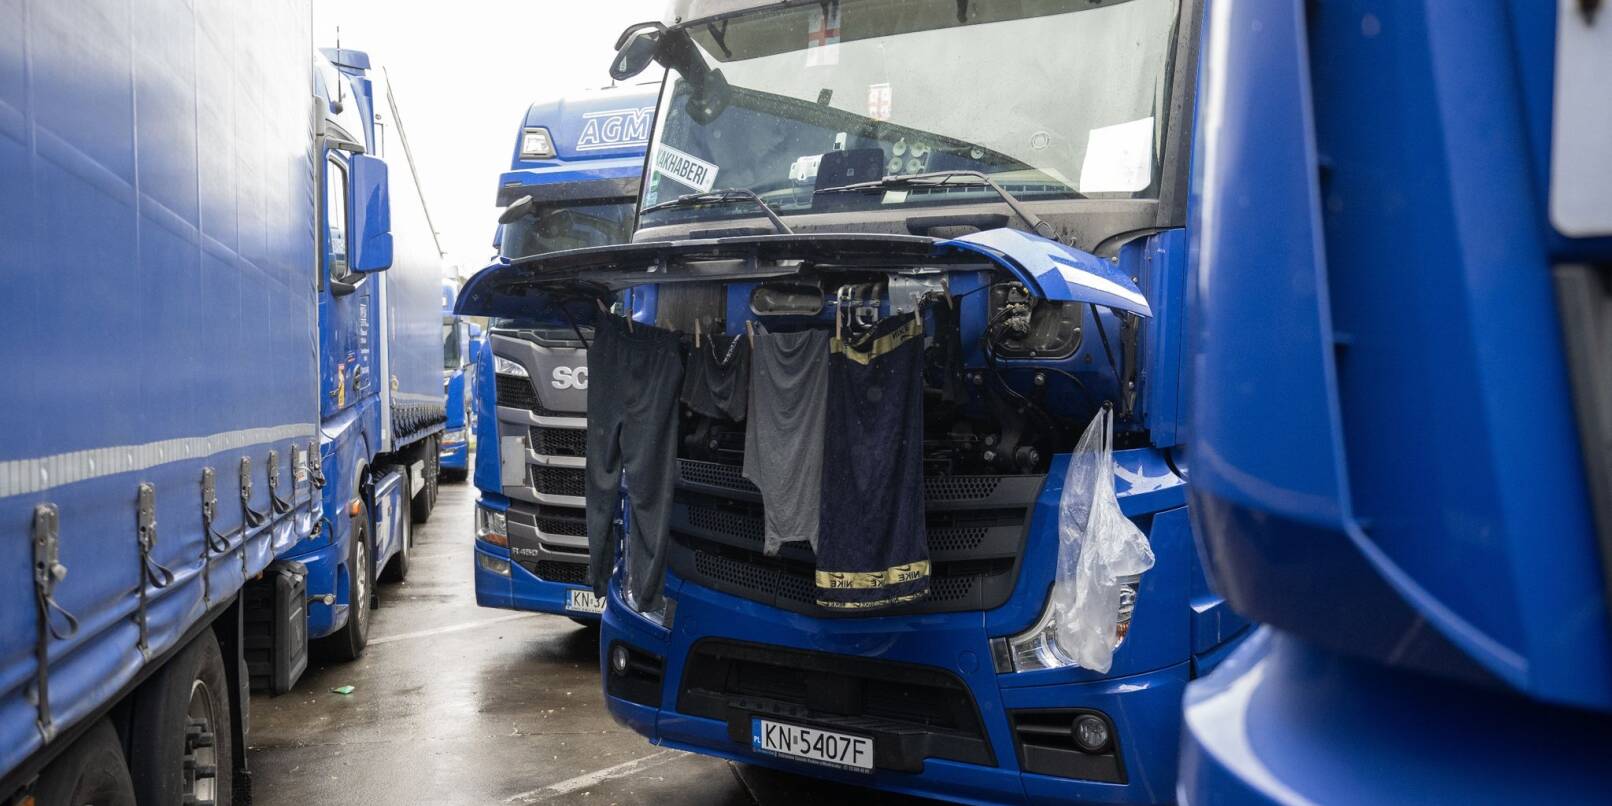 Wäsche hängt während eines Streiks zum Trocknen an einem Lastwagen.